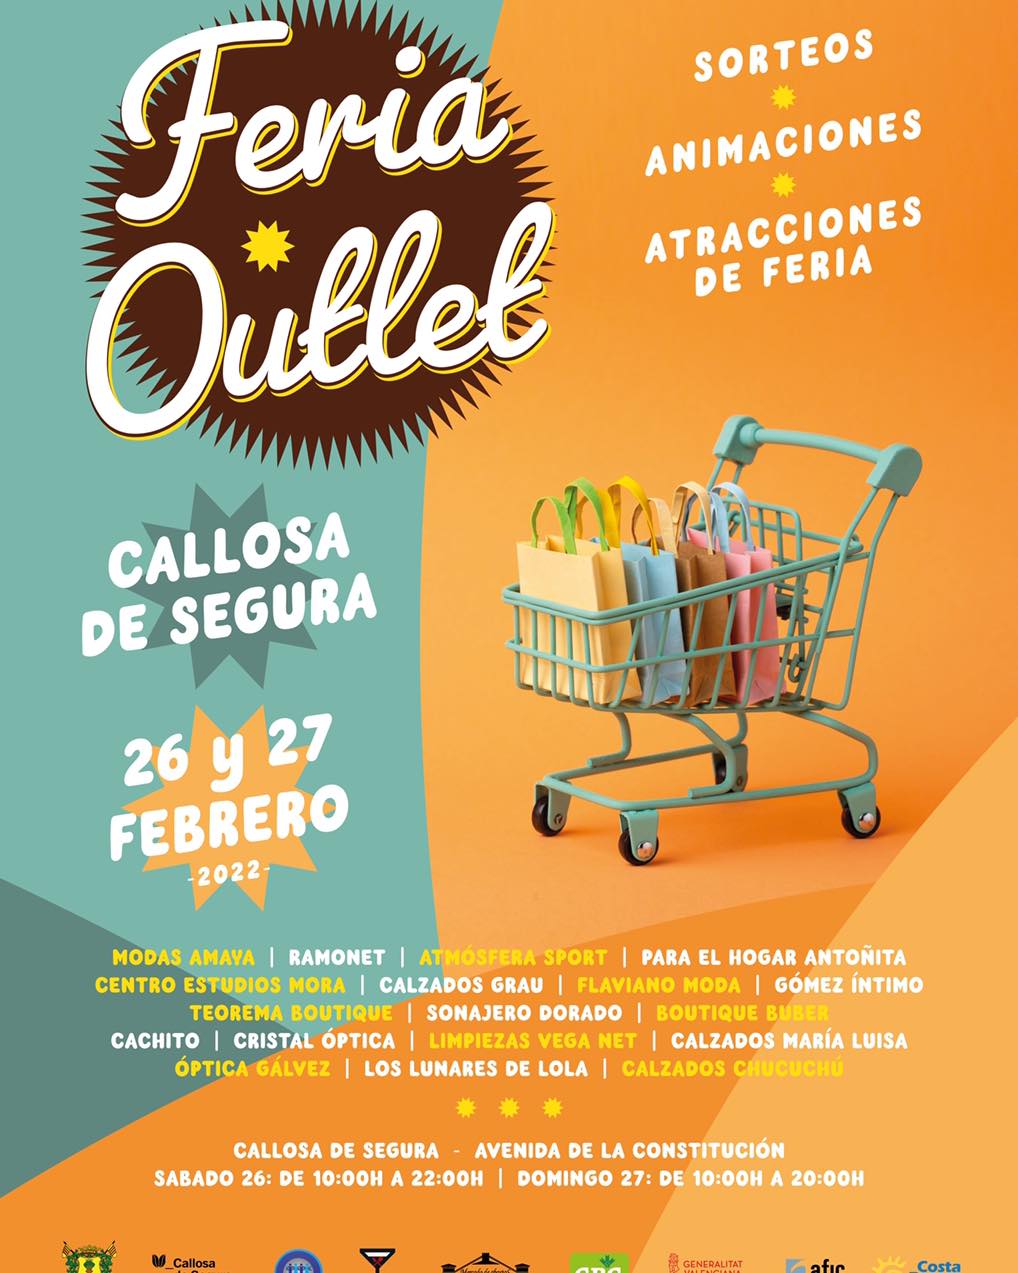 de Segura: Outlet Costra Market con una veintena de comercios participantes y con sorteos animaciones y atracciones